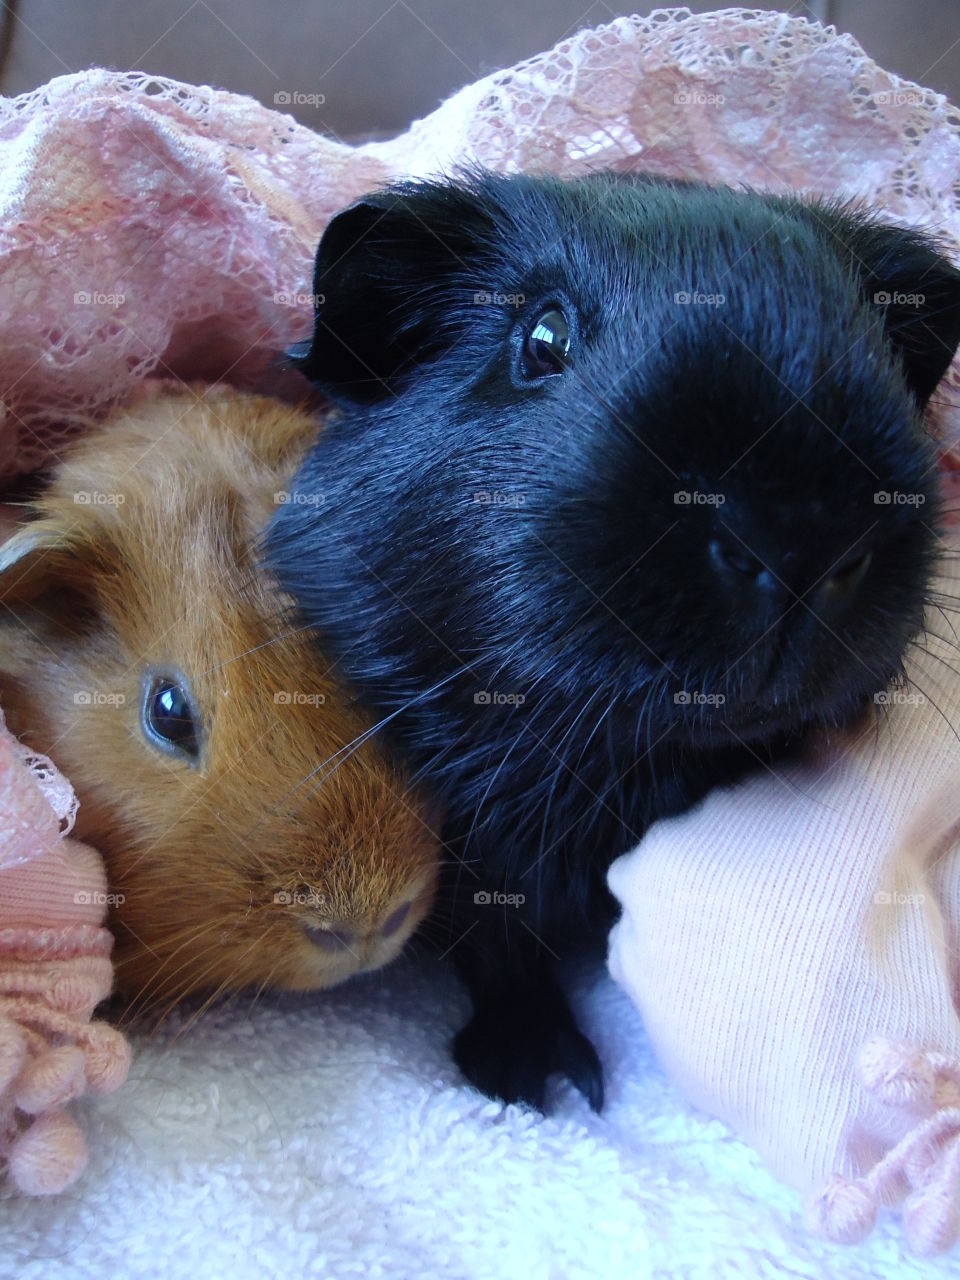 Guinea Pig friendship